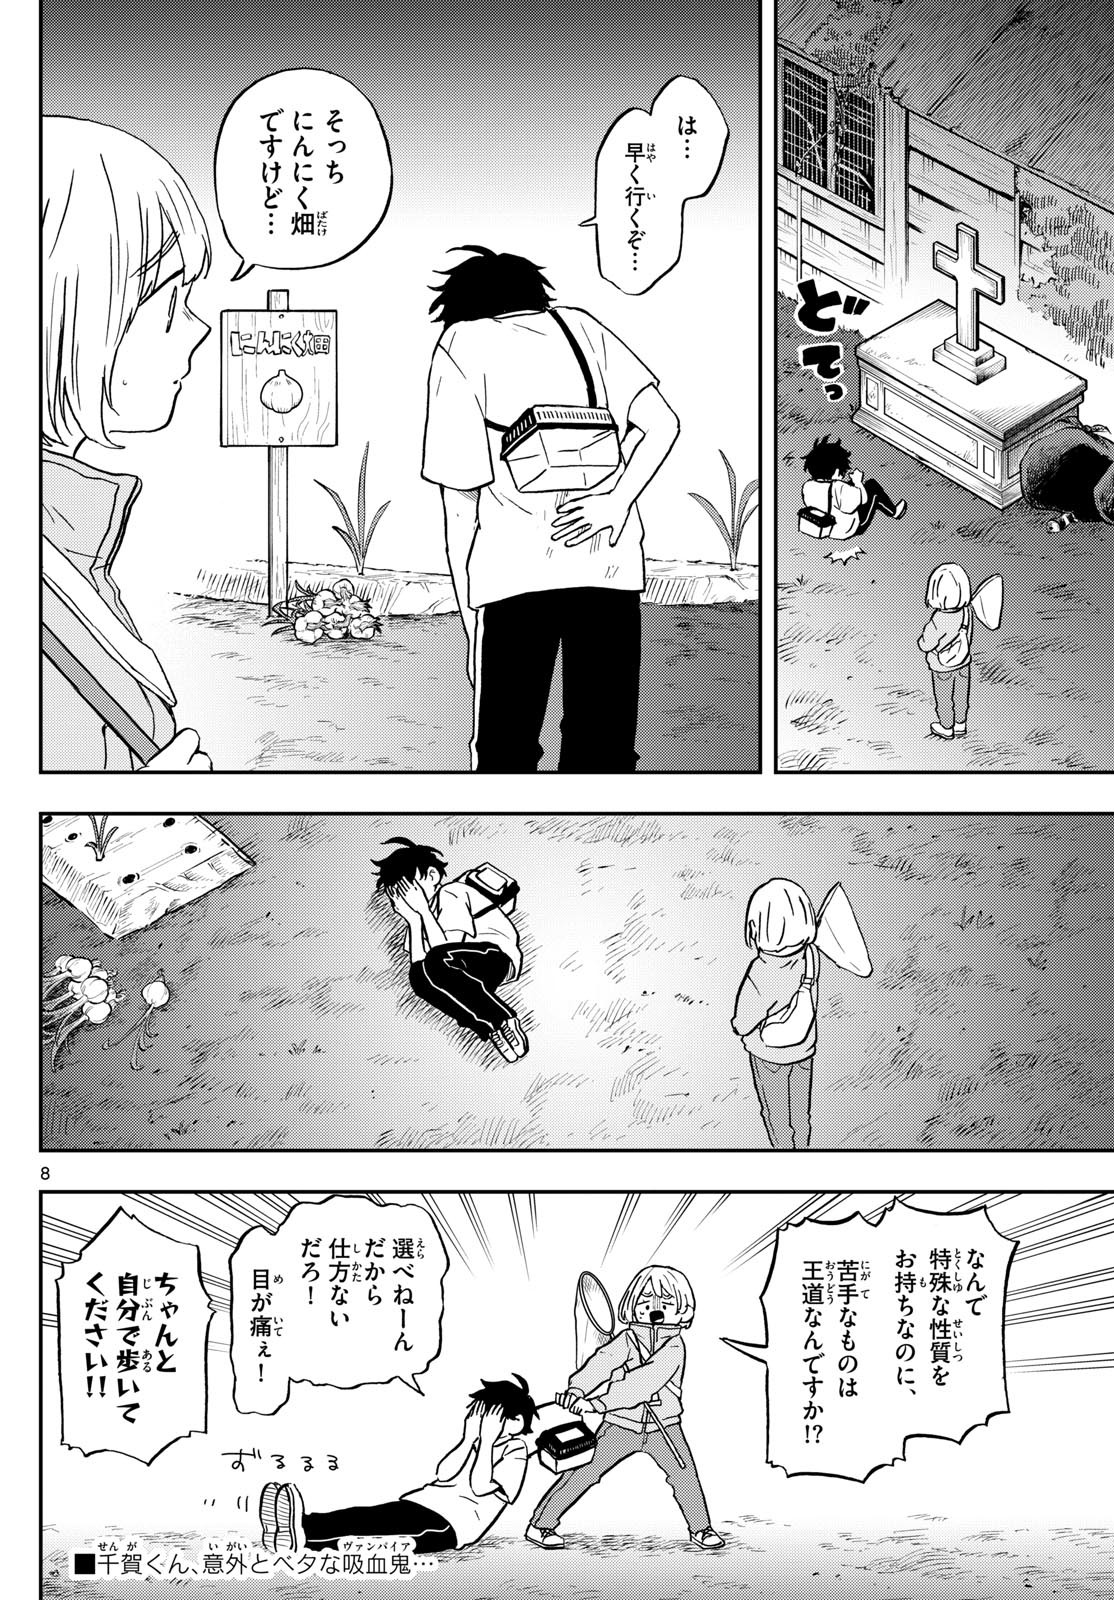 Omori Tsumiki to Kinichijou. - Chapter 23 - Page 8